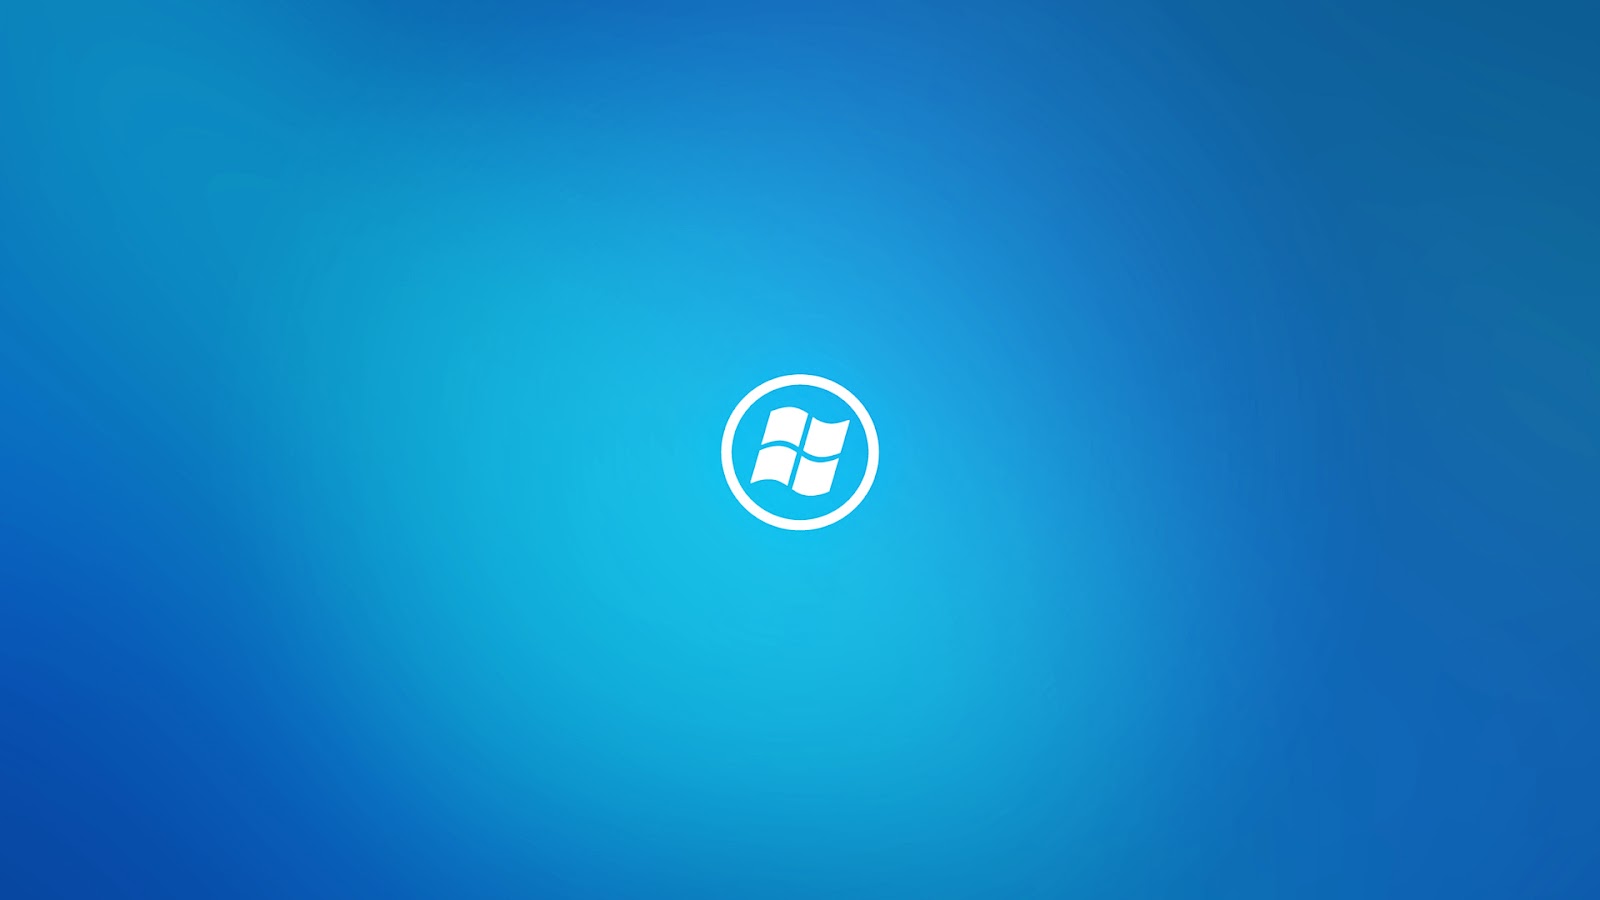 Windows 10 Gaming Wallpapers - WallpaperSafari